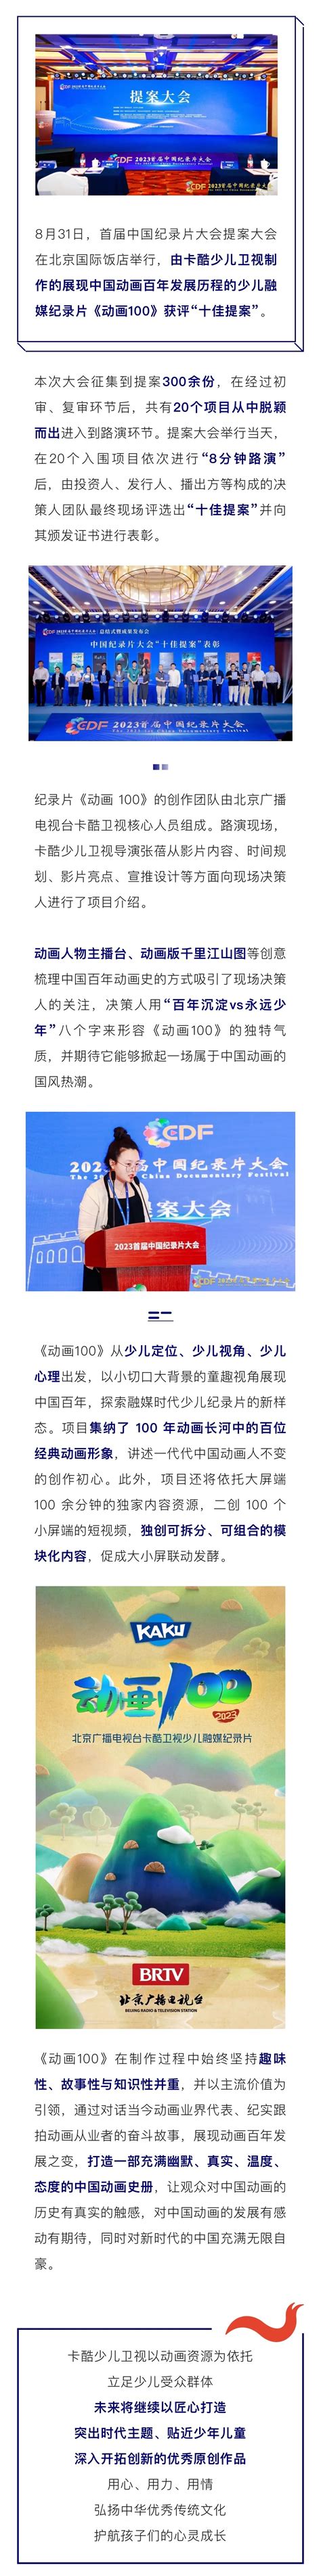 卡酷少儿纪录片《动画100》获评首届中国纪录片大会提案大会 十佳提案